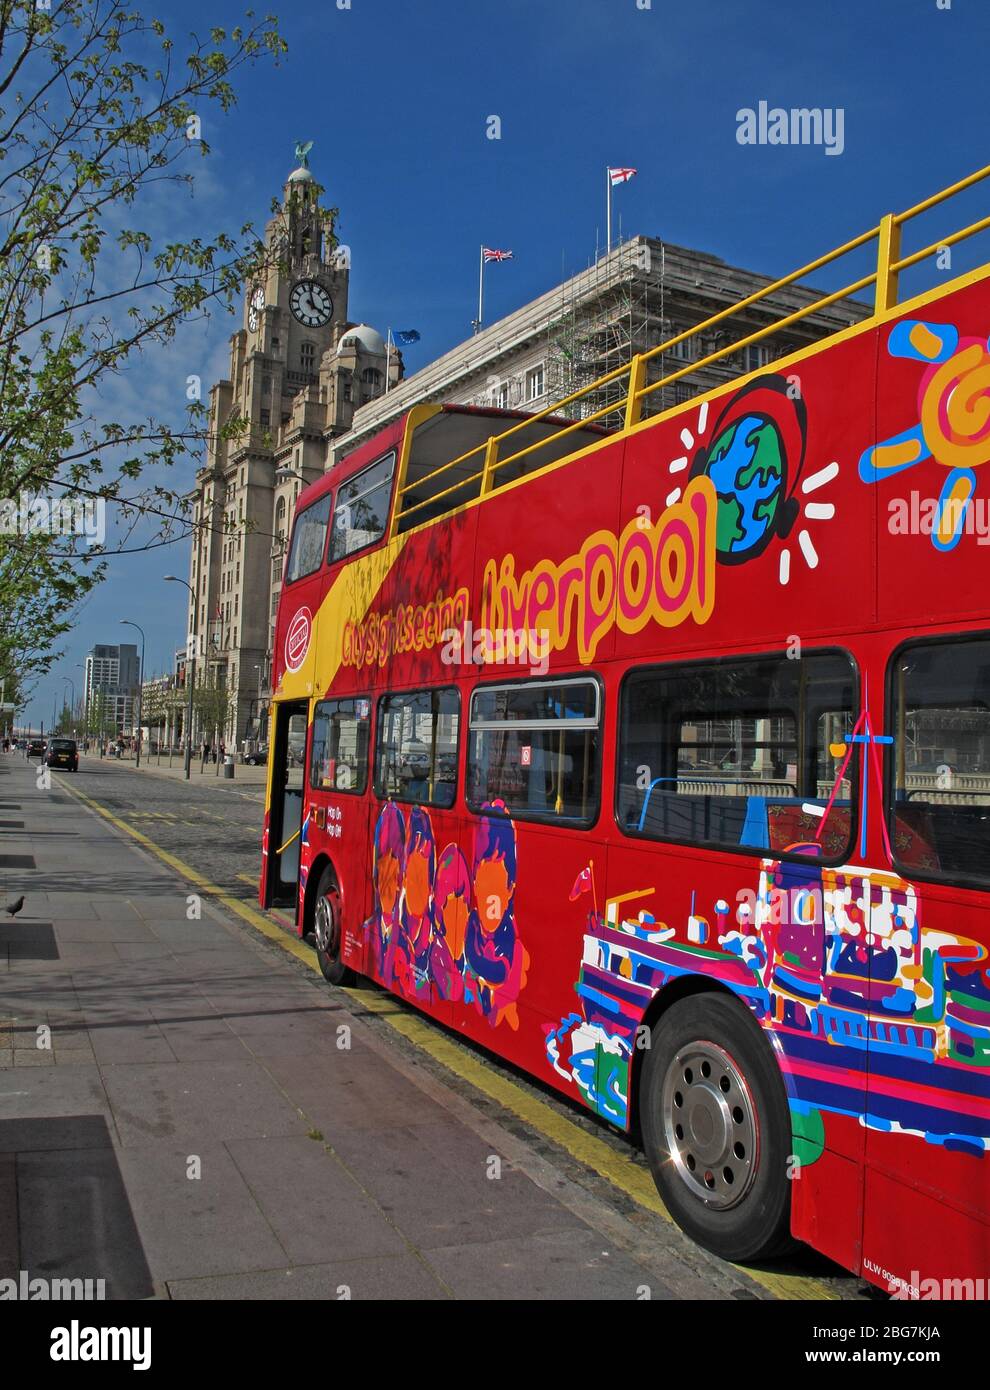 Giro turistico Liverpool Red bus, Pierhead, tre grazie, centro città, Liverpool, Merseyside, Inghilterra nord-occidentale, Regno Unito, L3 1DP Foto Stock